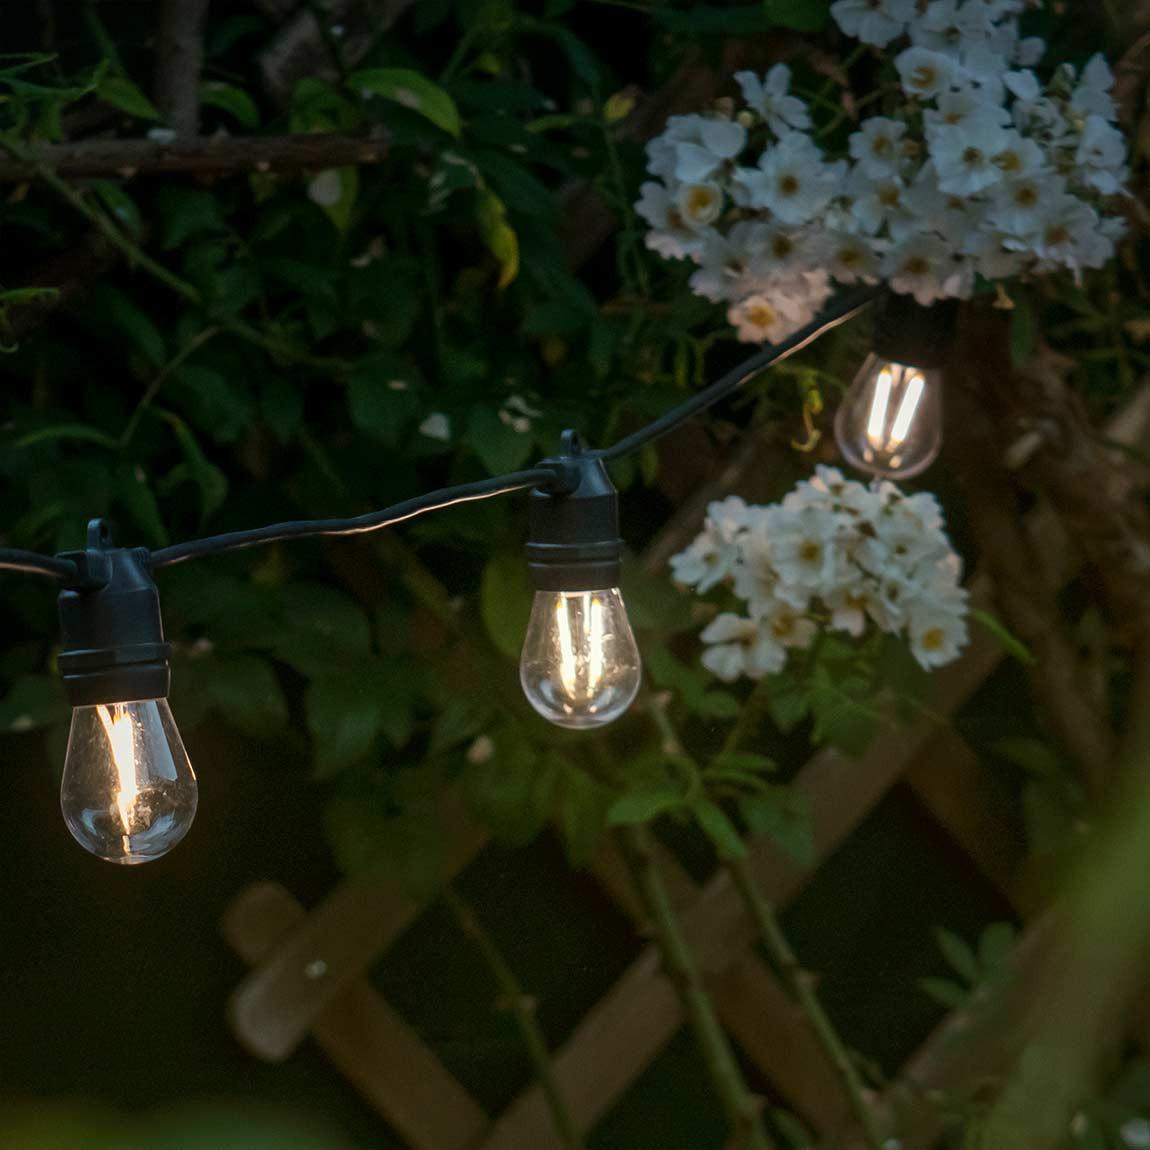 Hombli Outdoor Smart Light String 5m - Schwarz_Lifestyle_vor Gartenzaun_3